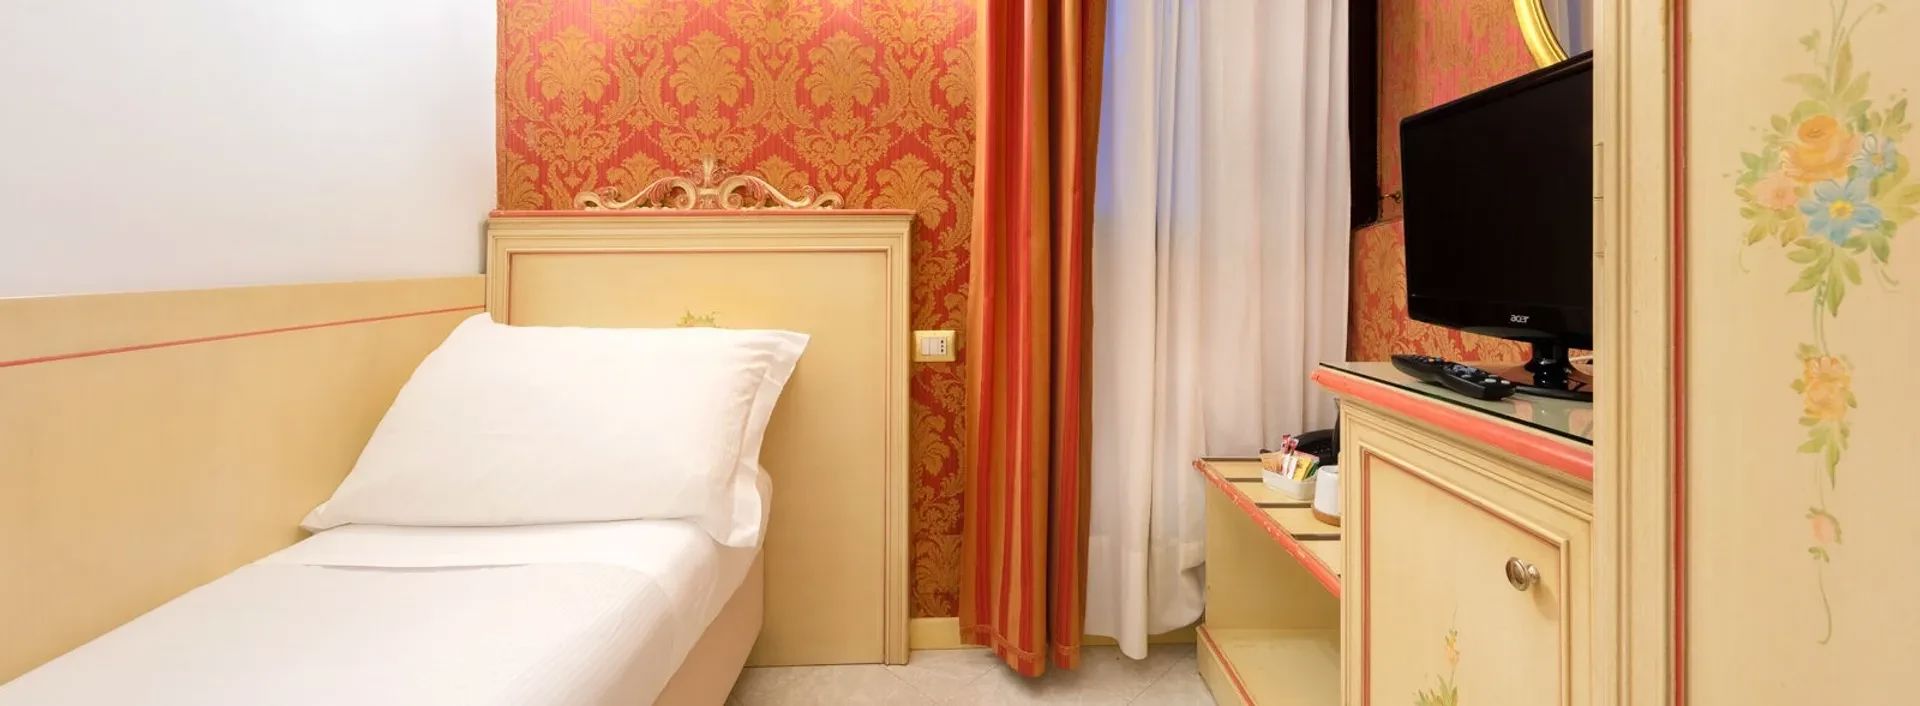 Hotel San Giorgio - Classic Single Room 2